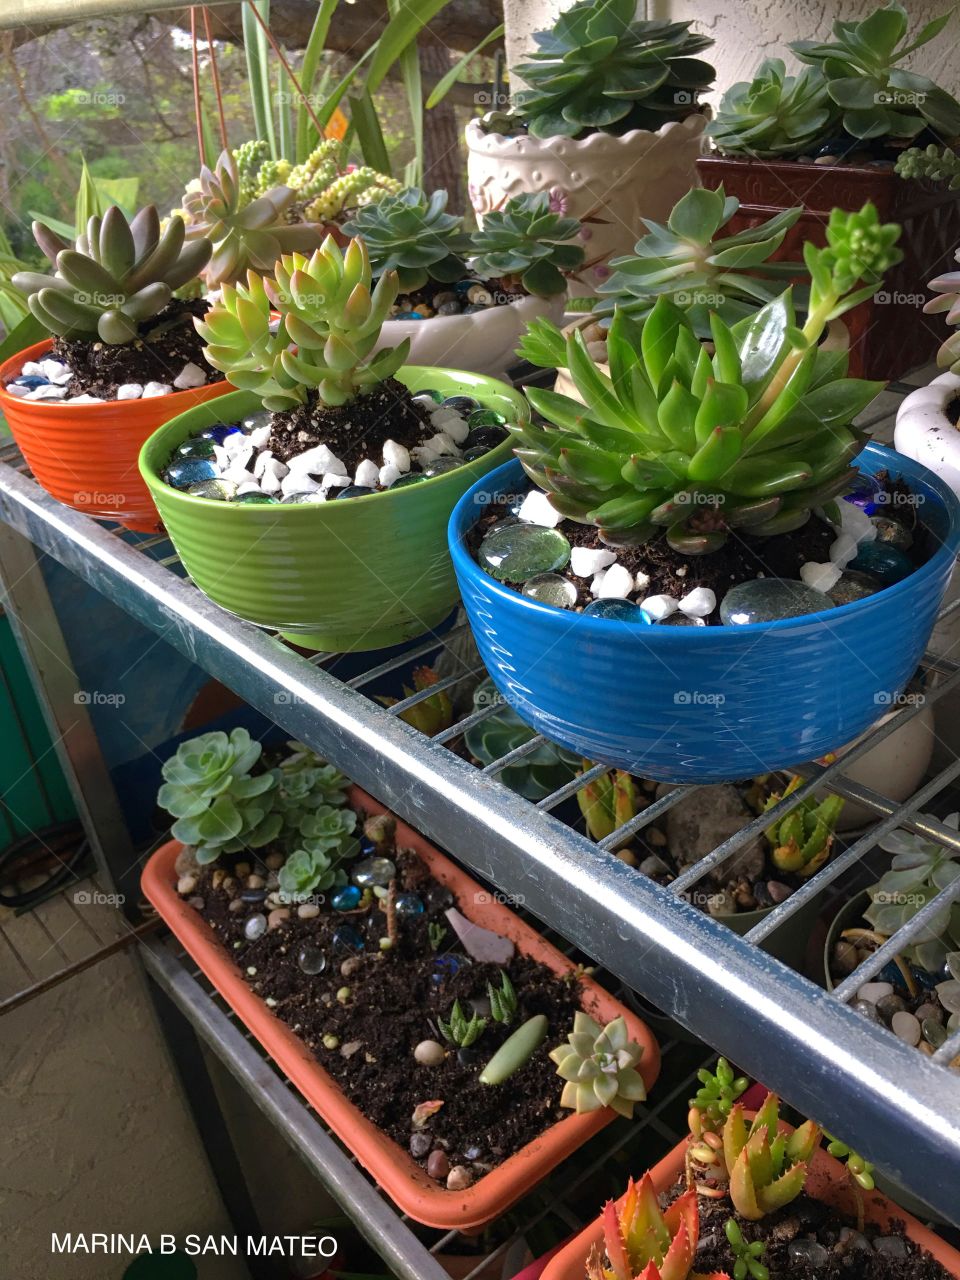 Plants in pots 